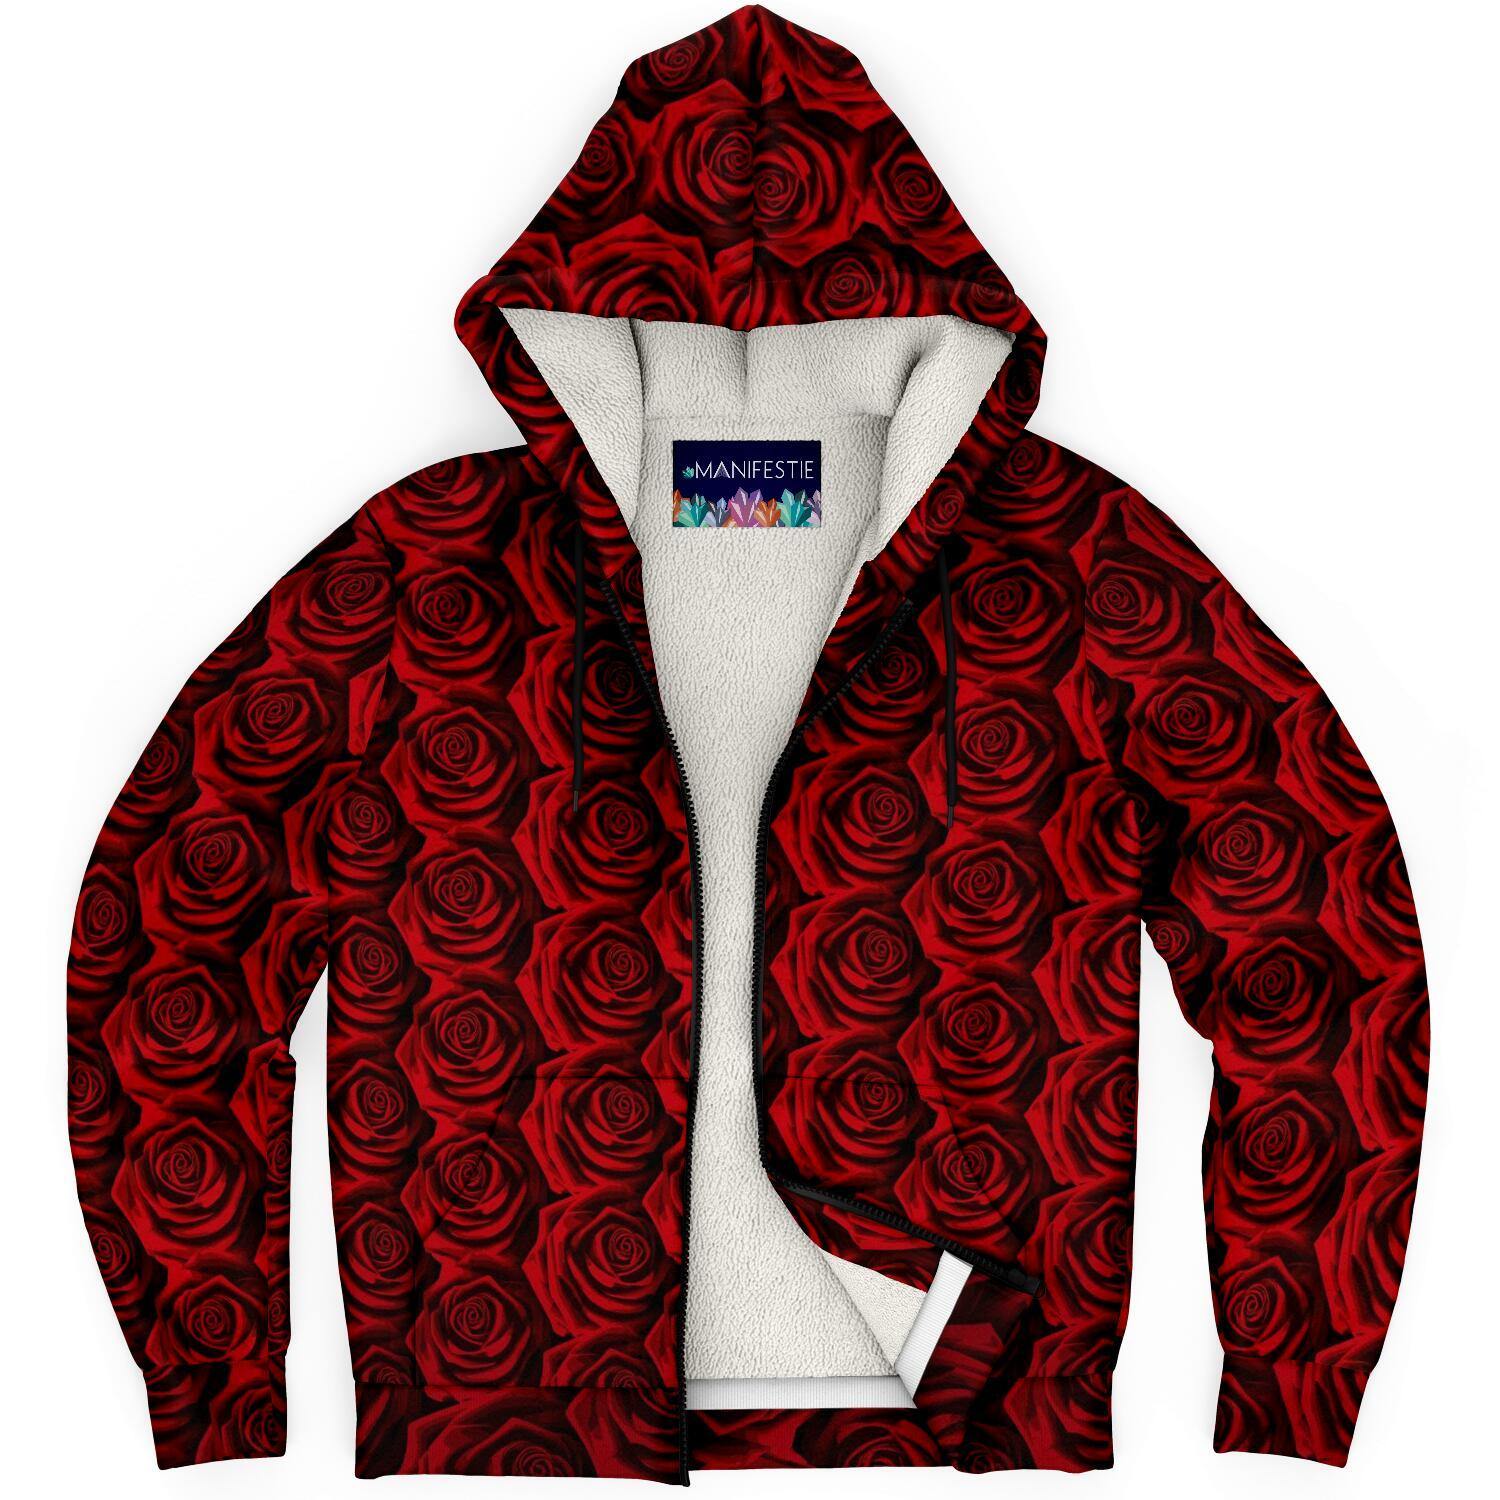 Moody Roses Premium Sherpa Lined Zip Hoodie - Manifestie